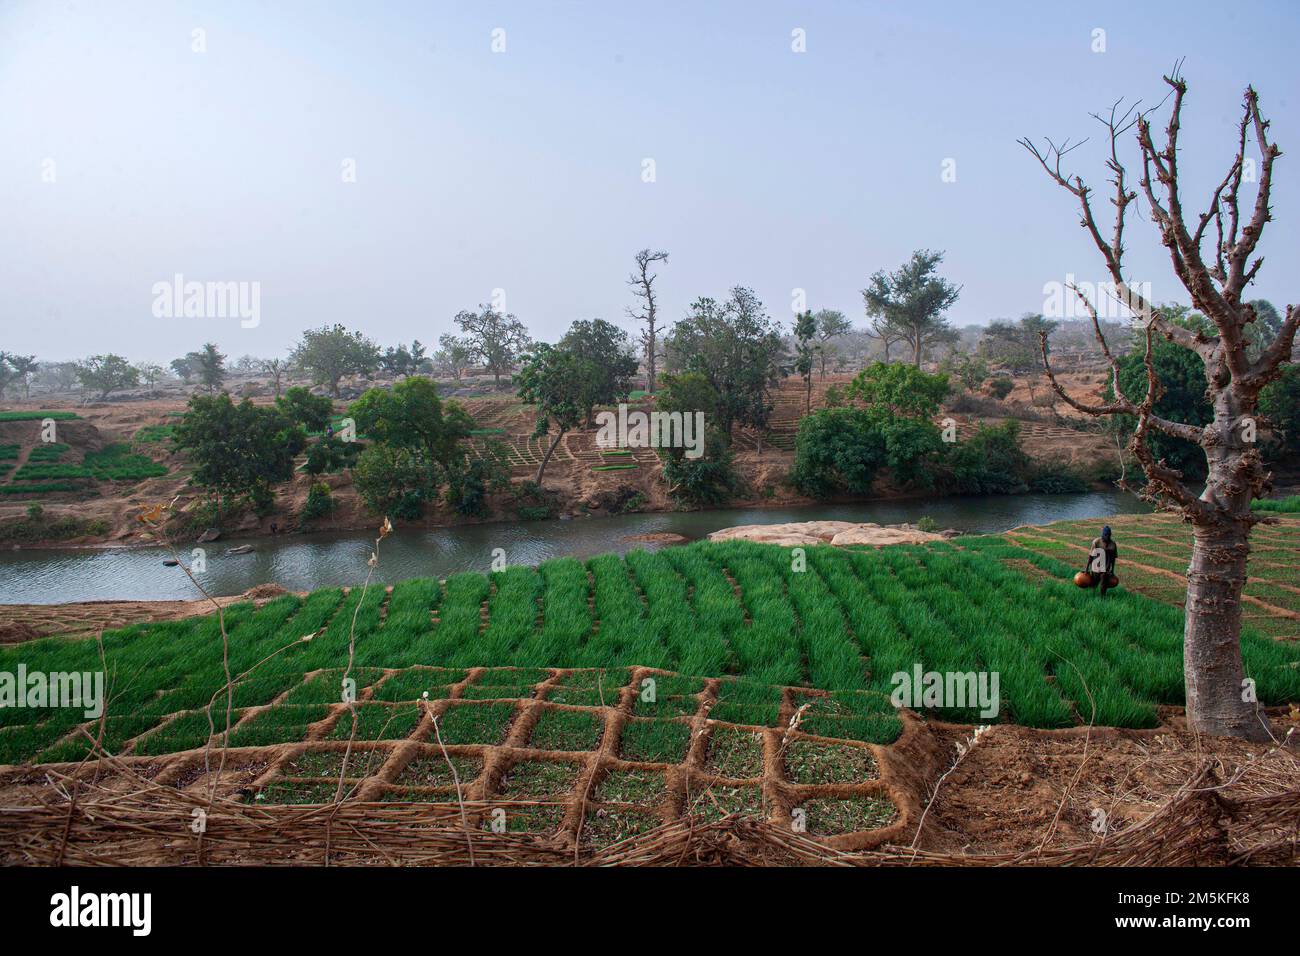 Fermier arroser les champs d'oignons luxuriants près de Bandiagara dans la région de Dogon, Mali, Afrique de l'Ouest. Banque D'Images